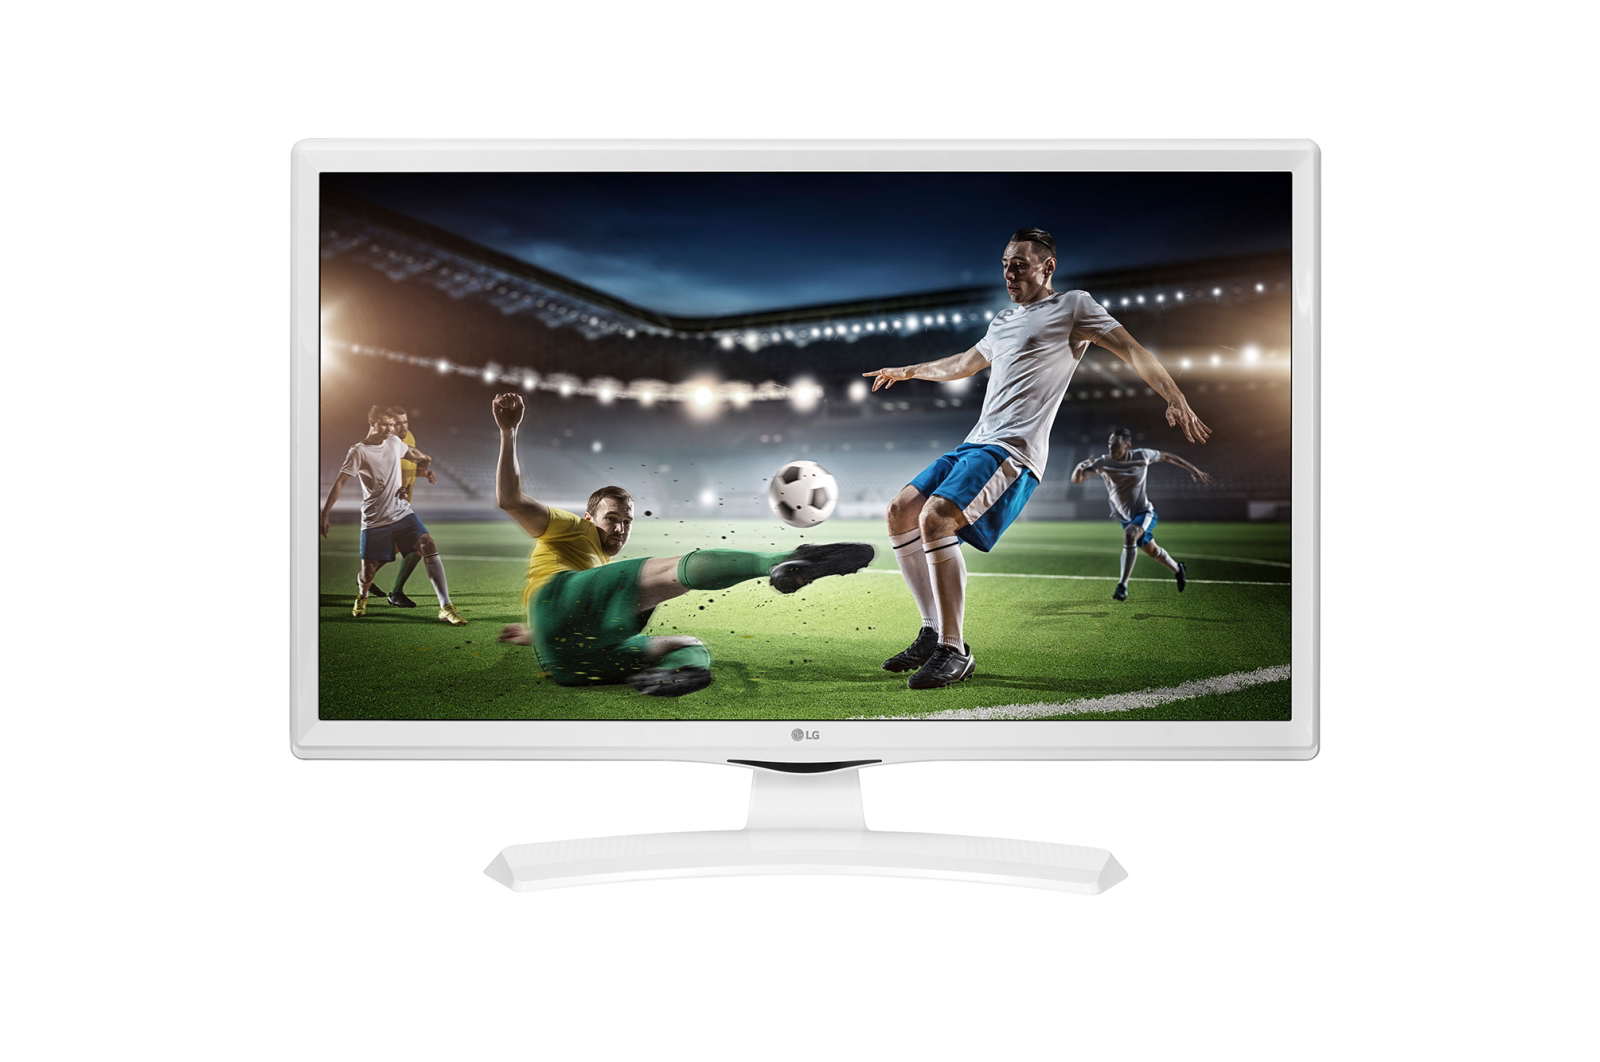 LG 27' 27TQ615S-PZ FHD IPS LED TV 5ms Bluetooth Wi-Fi Full HD 1920 × 1080,  IPS, 16:9 képarány, 14ms válaszidő, 60Hz képfrissítési gyakoriság, 8bit